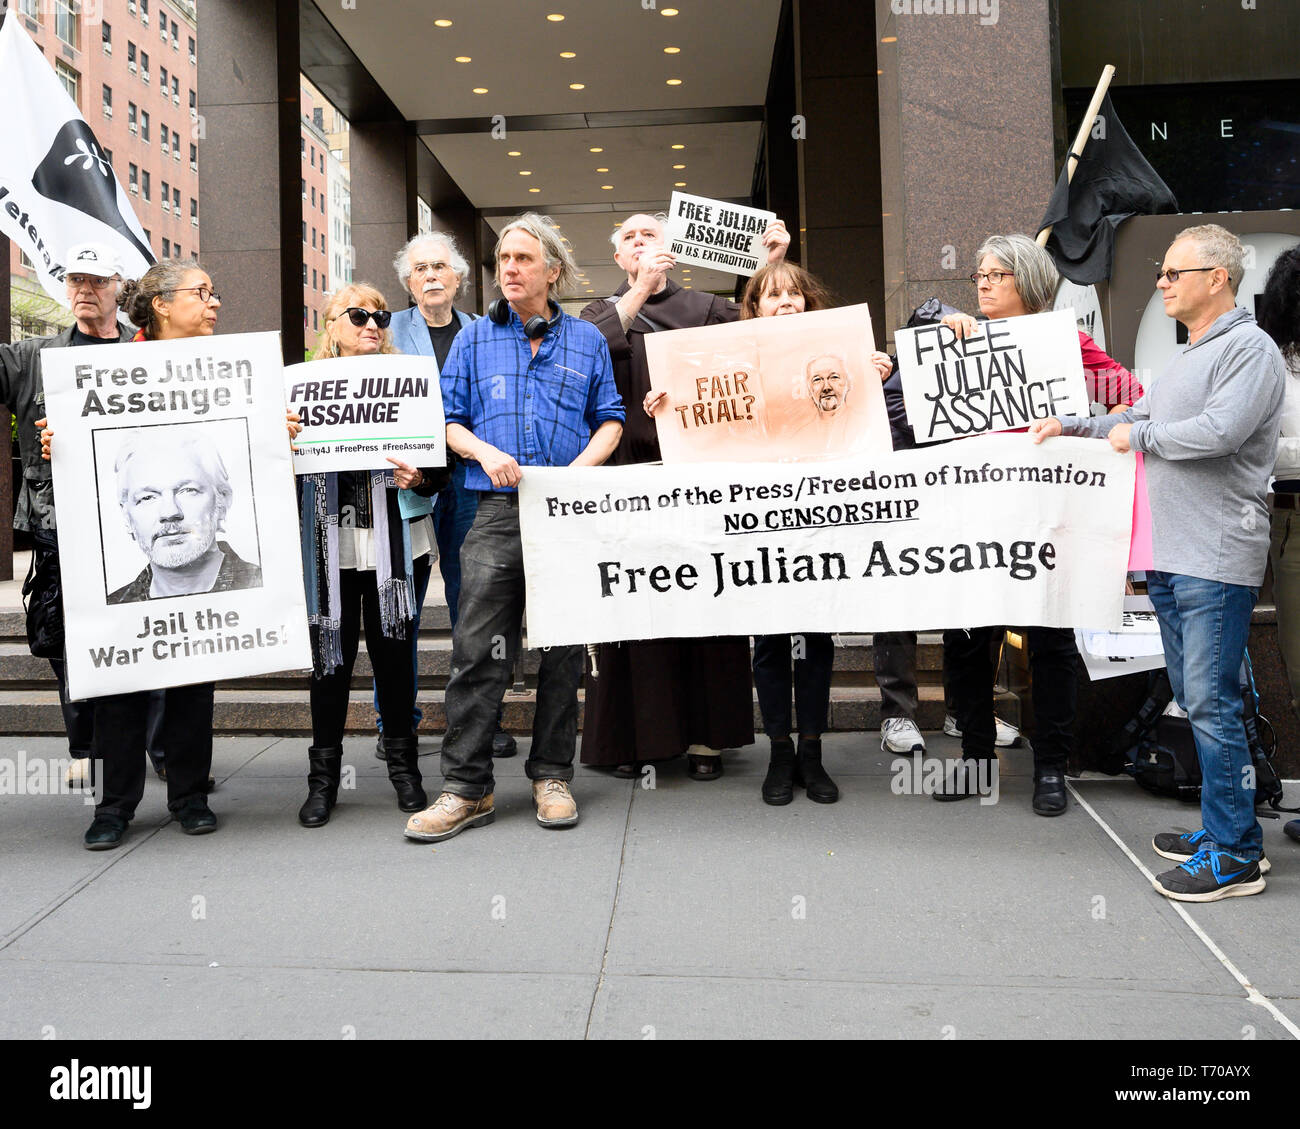 Demonstranten mit Plakaten und Fahnen gesehen während einer Kundgebung zur Unterstützung von Julian Assange vor dem britischen Konsulat in New York City statt. Stockfoto